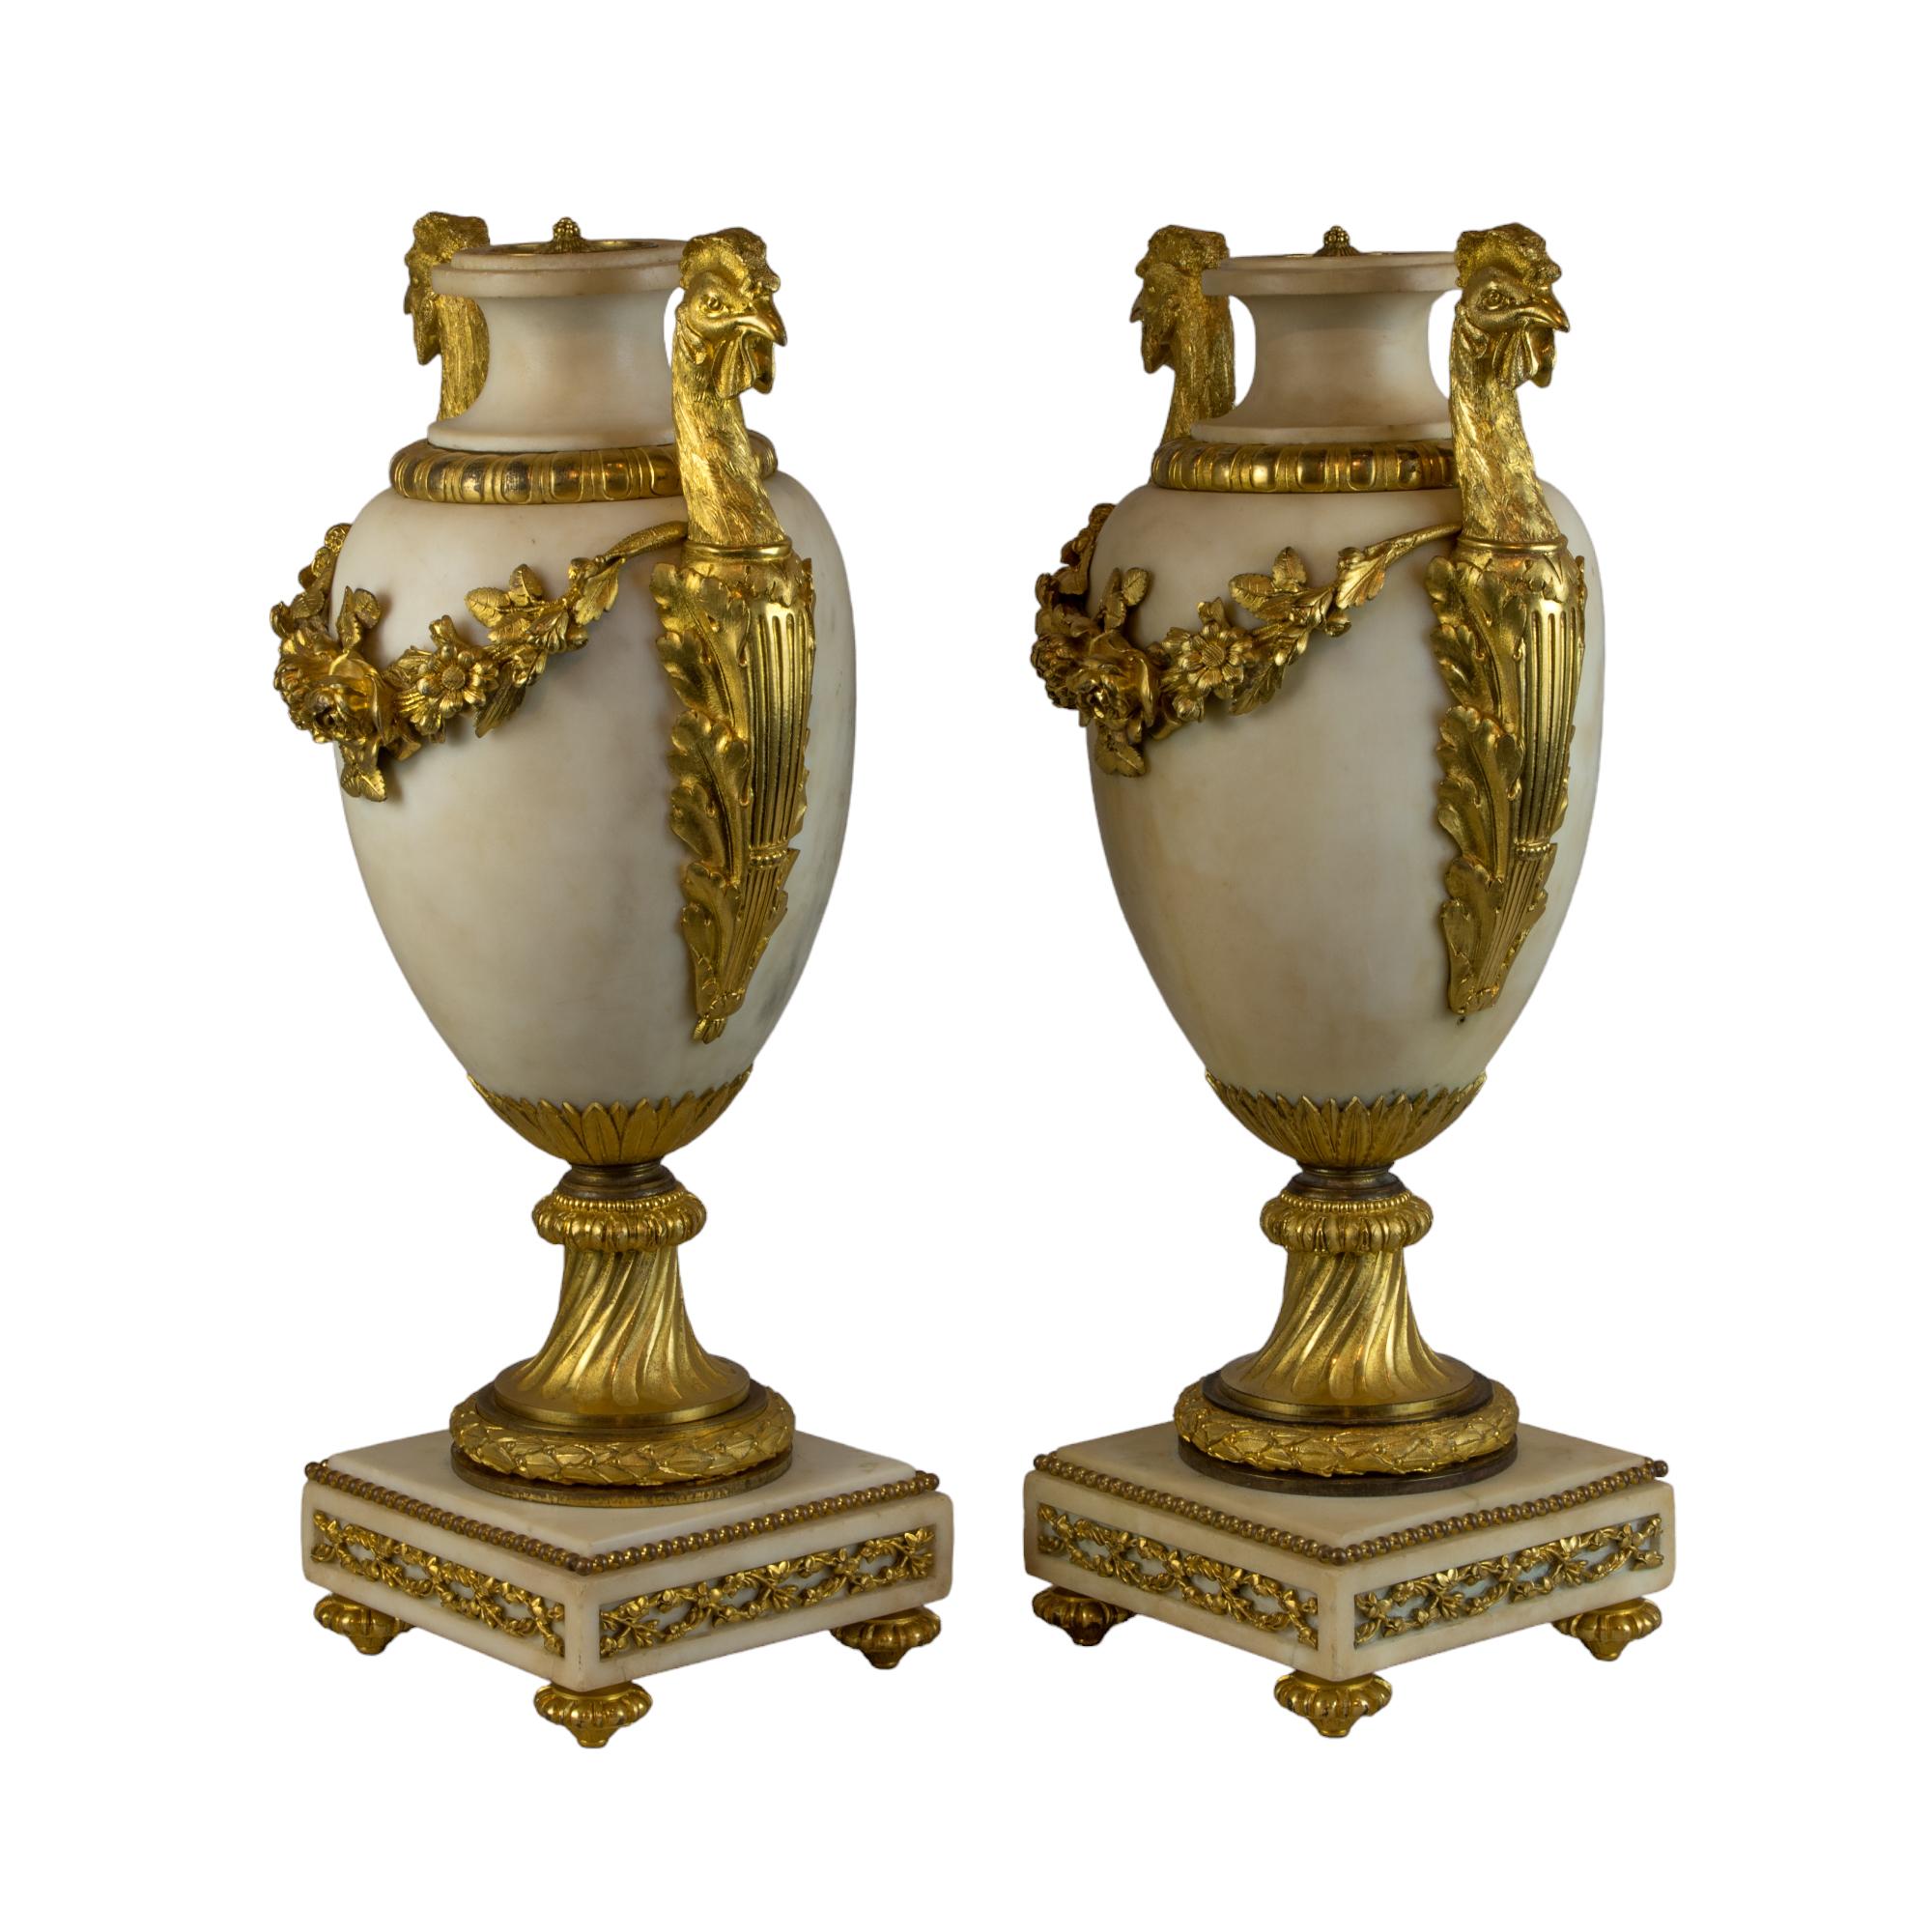 Ein hervorragendes Paar Urnen aus weißem Marmor mit Goldbronze im Louis-XVI-Stil, die den neoklassischen Geschmack des 19. Jahrhunderts verkörpern und eine harmonische Mischung aus Nützlichkeit und Grandeur darstellen. Jede Urne ist ein Zeugnis